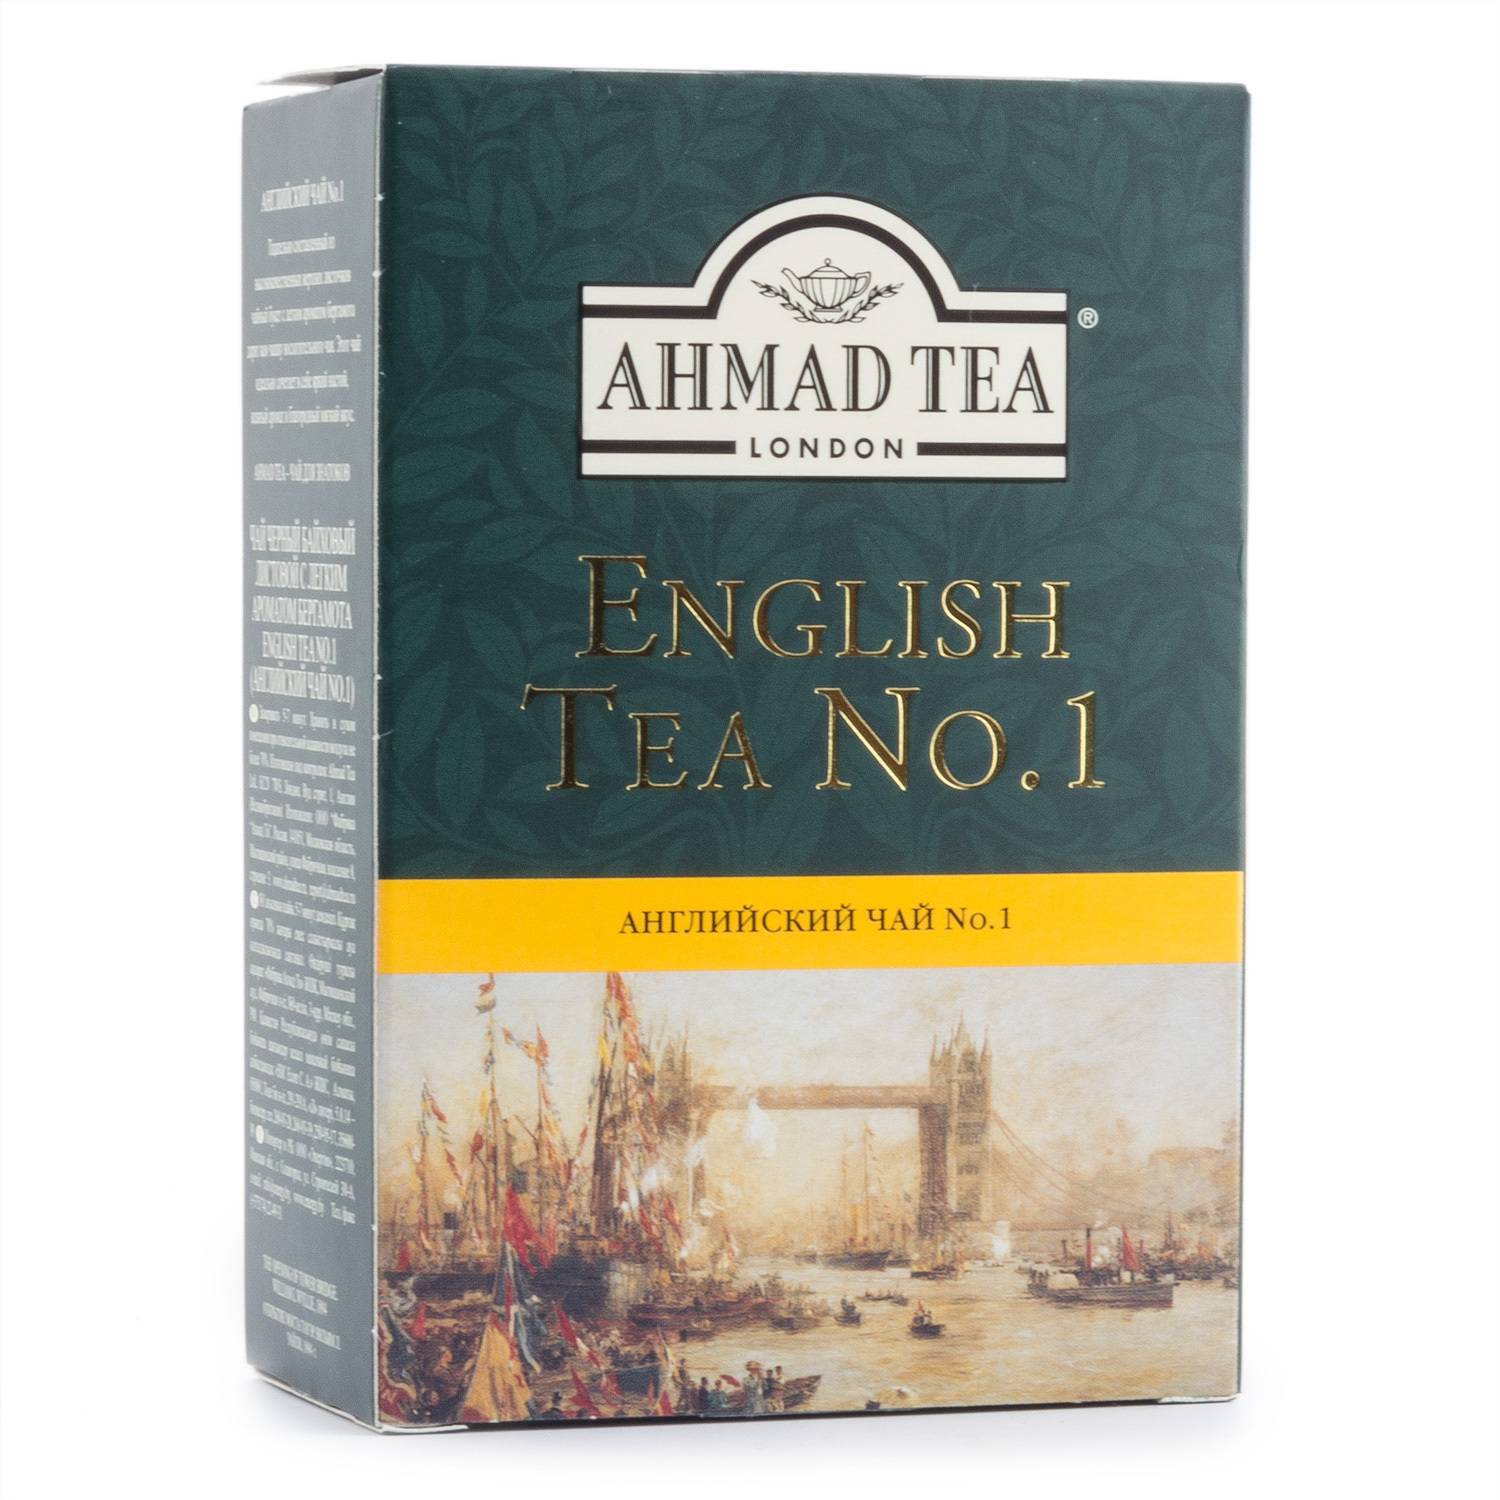 Чай ахмад (ahmad tea) — особенности вкуса, польза и вред, отзывы